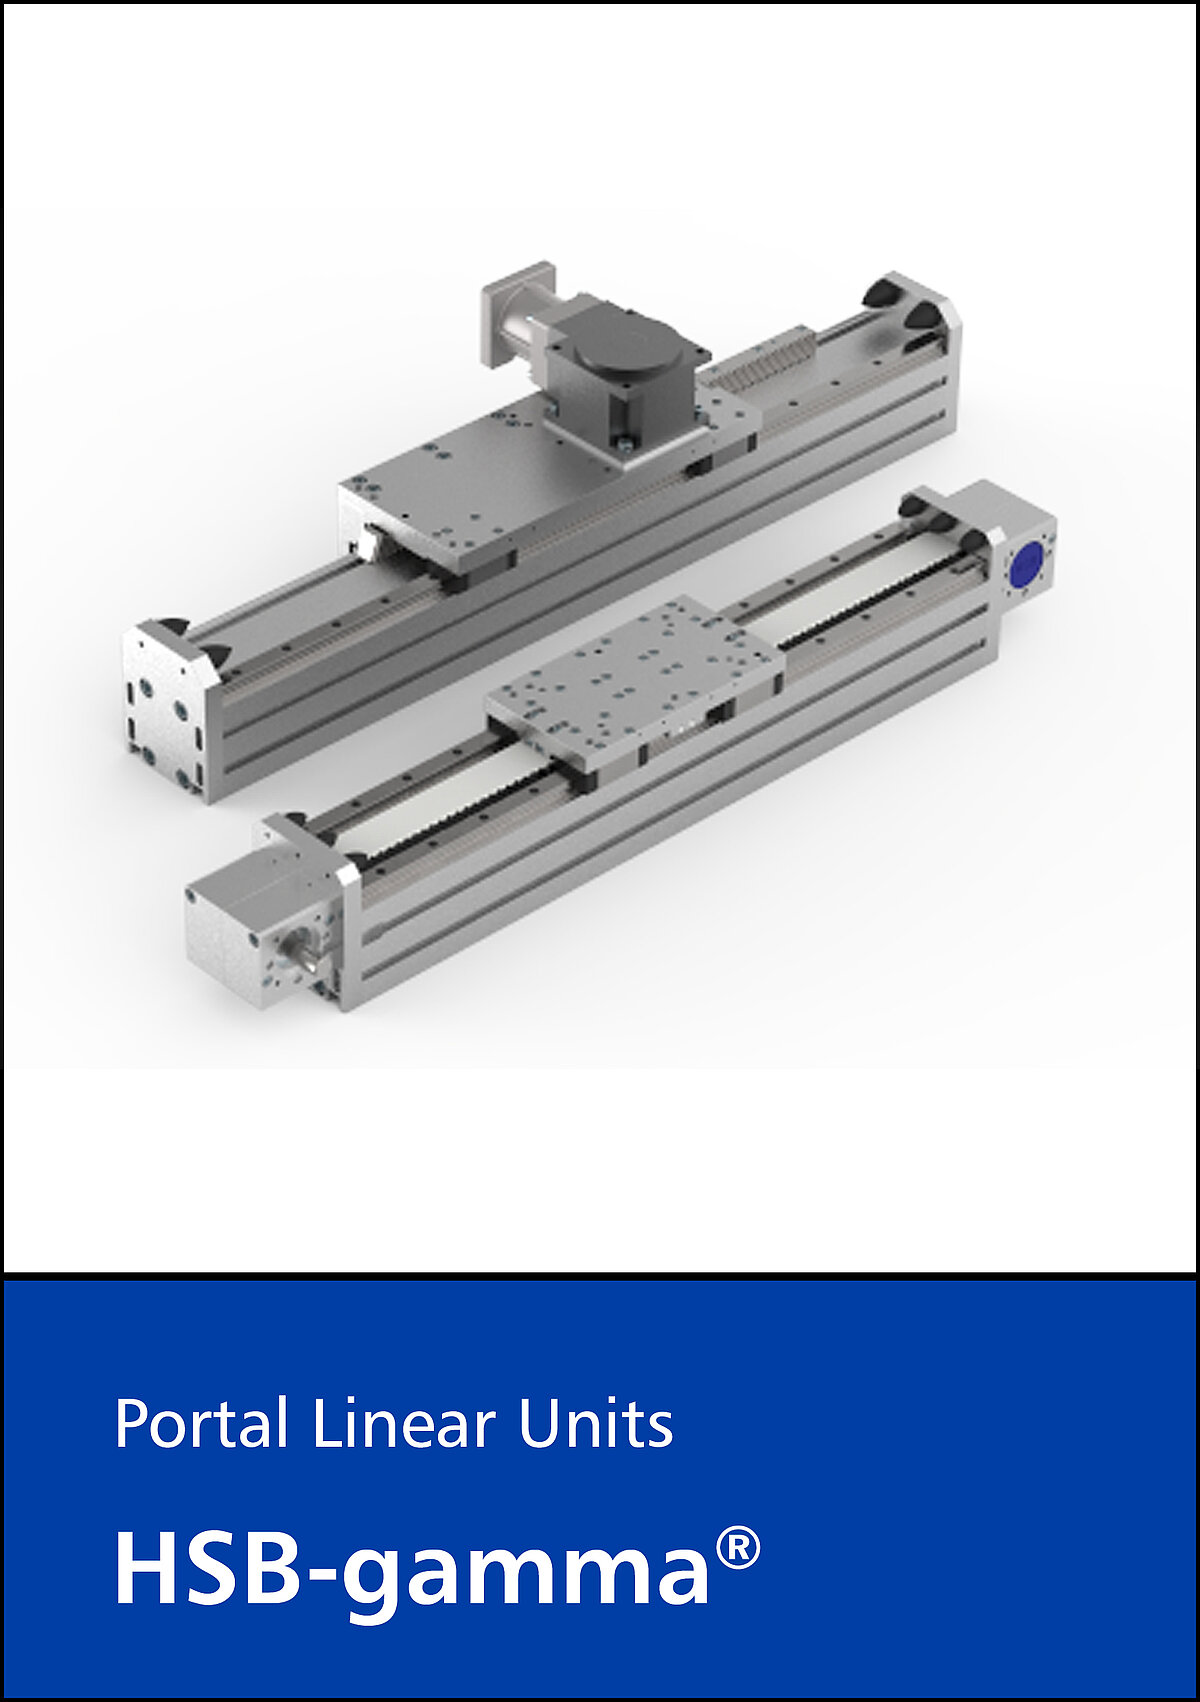 HSB-gamma® portal linear drives